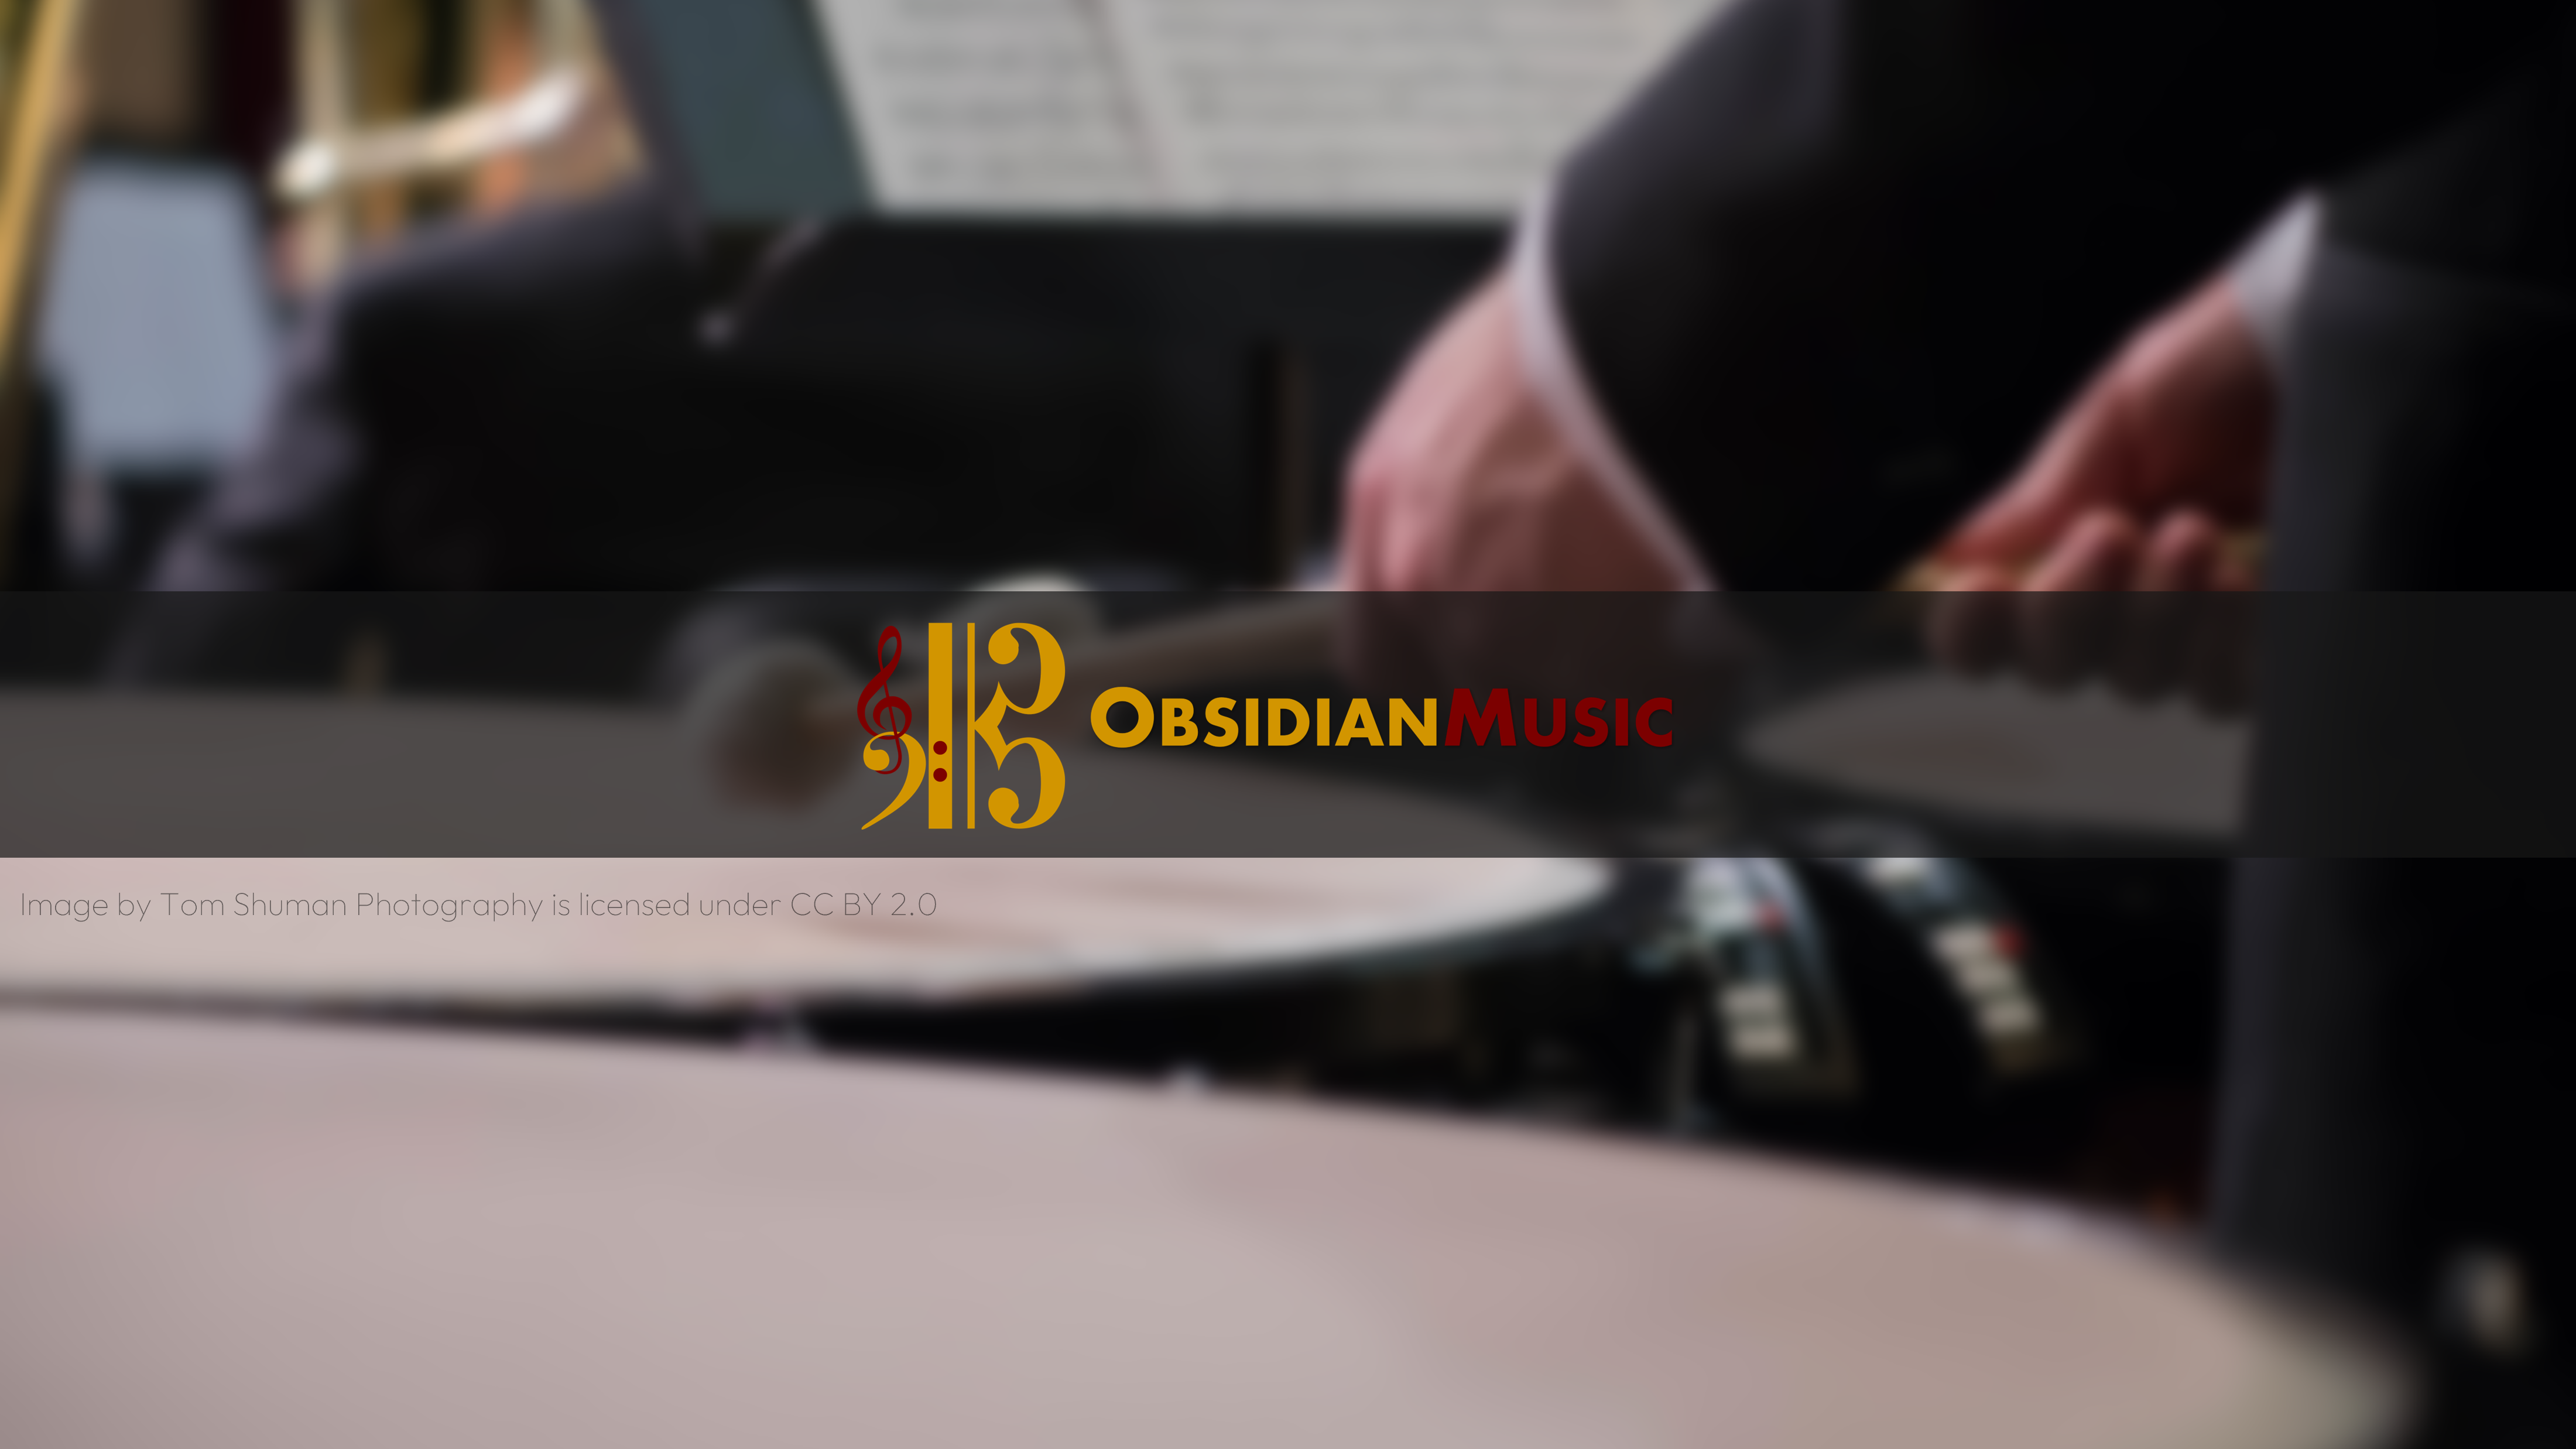 ObsidianMusic